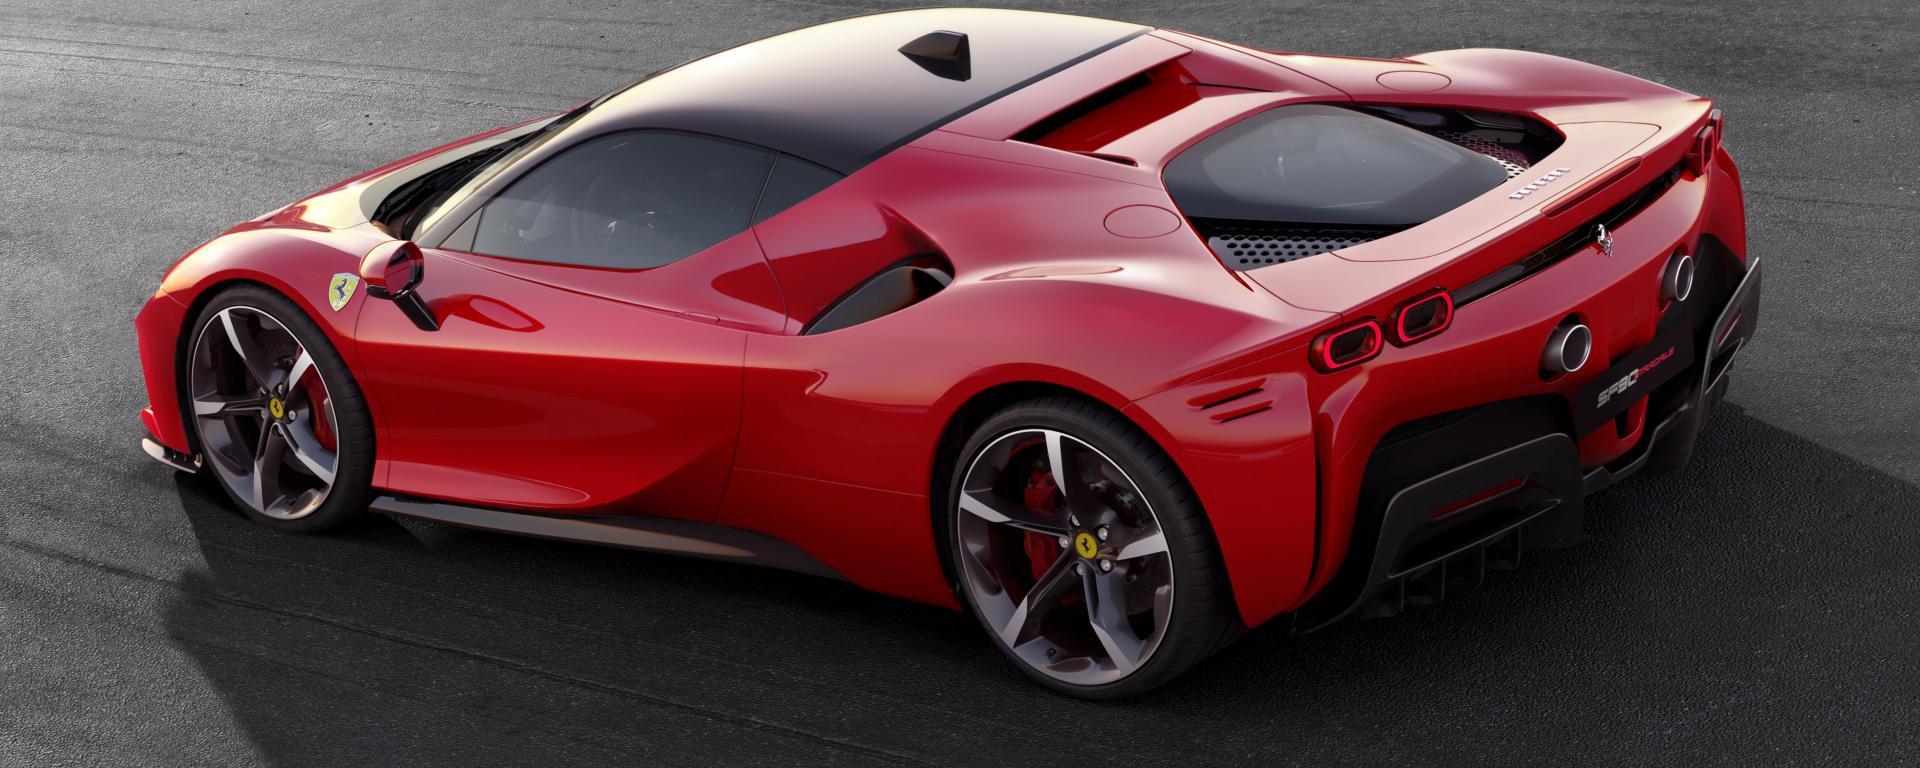 Ferrari ibrida 2019: prezzo, scheda tecnica e design. L'immagine